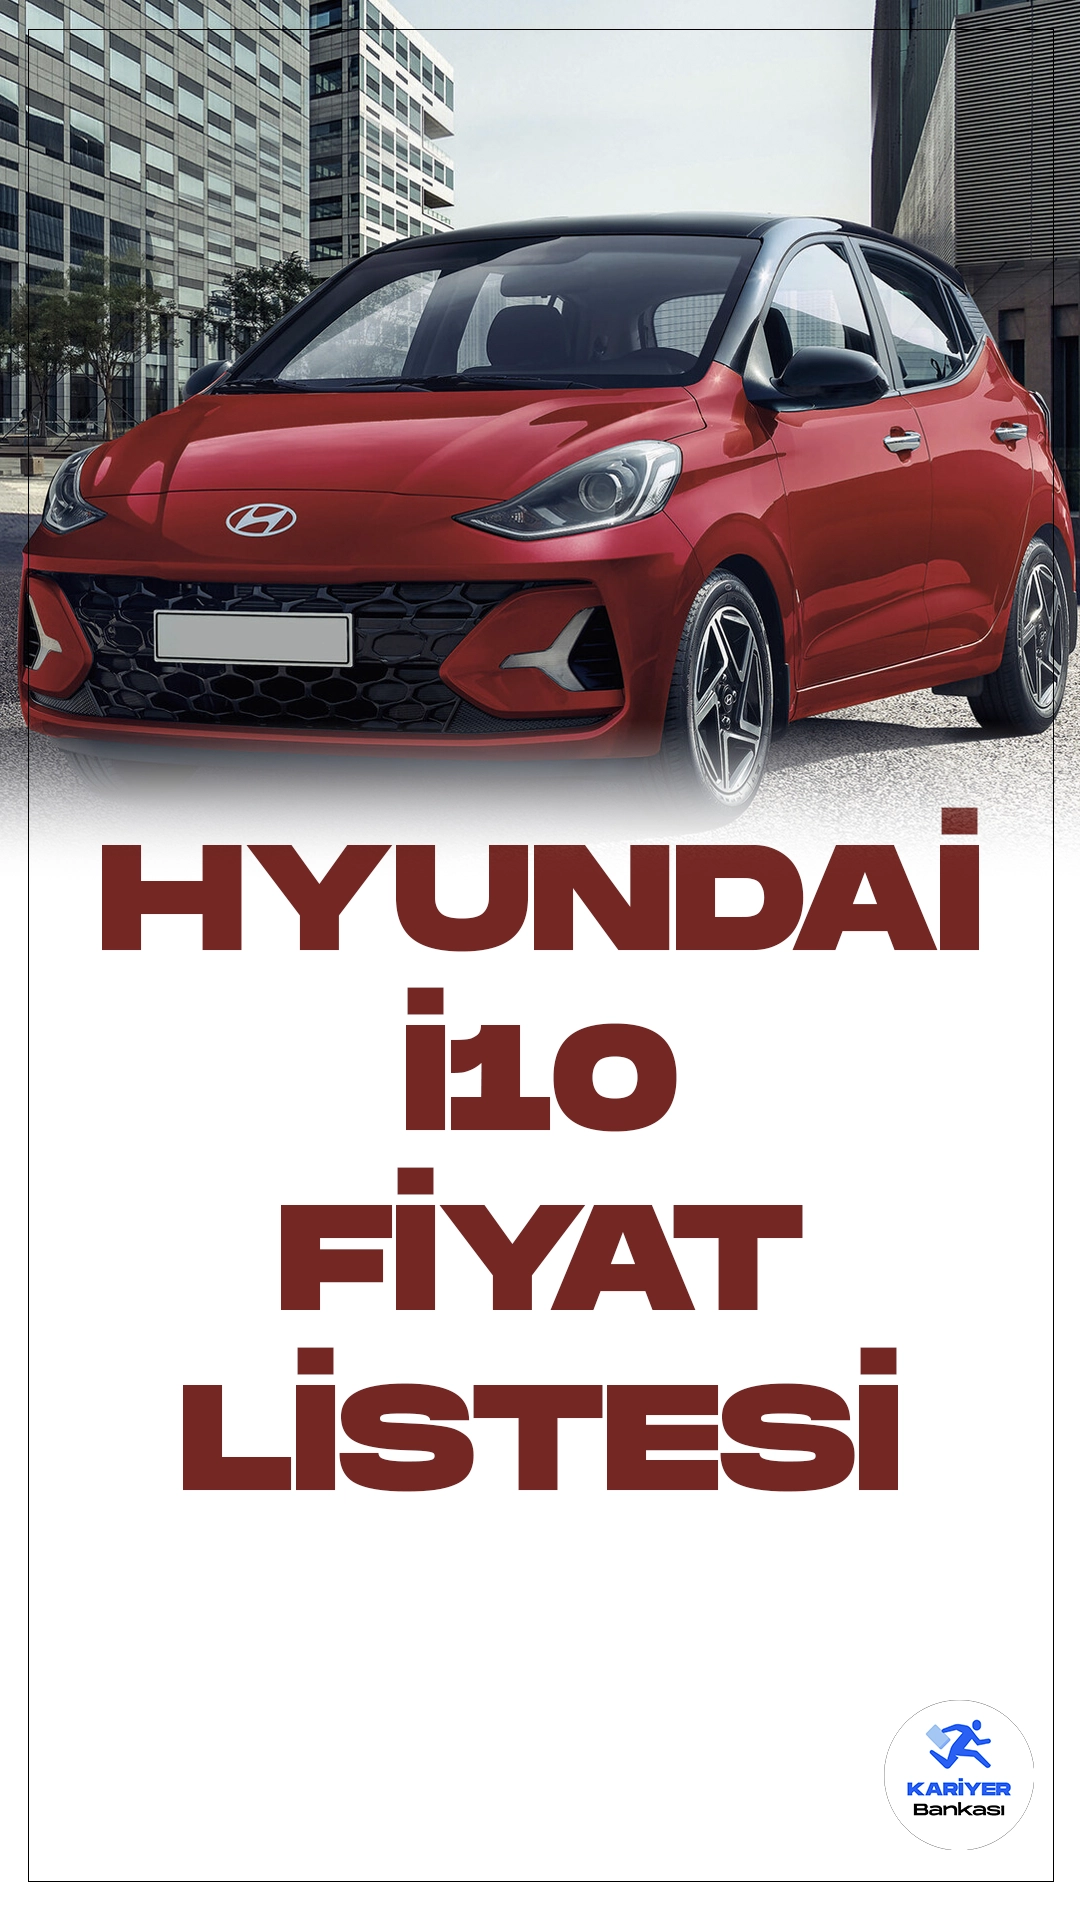 Hyundai i10 Ocak 2024 Fiyat Listesi Yayımlandı!Hyundai i10, kompakt segmentte estetik tasarımı, üstün performansı ve kullanıcı dostu özellikleriyle dikkat çeken bir araç modelidir. Güçlü motor seçenekleri ve şehir içi kullanım için ideal boyutlarıyla öne çıkan Hyundai i10, sürücüleri yüksek performans ve konforla buluşturuyor.